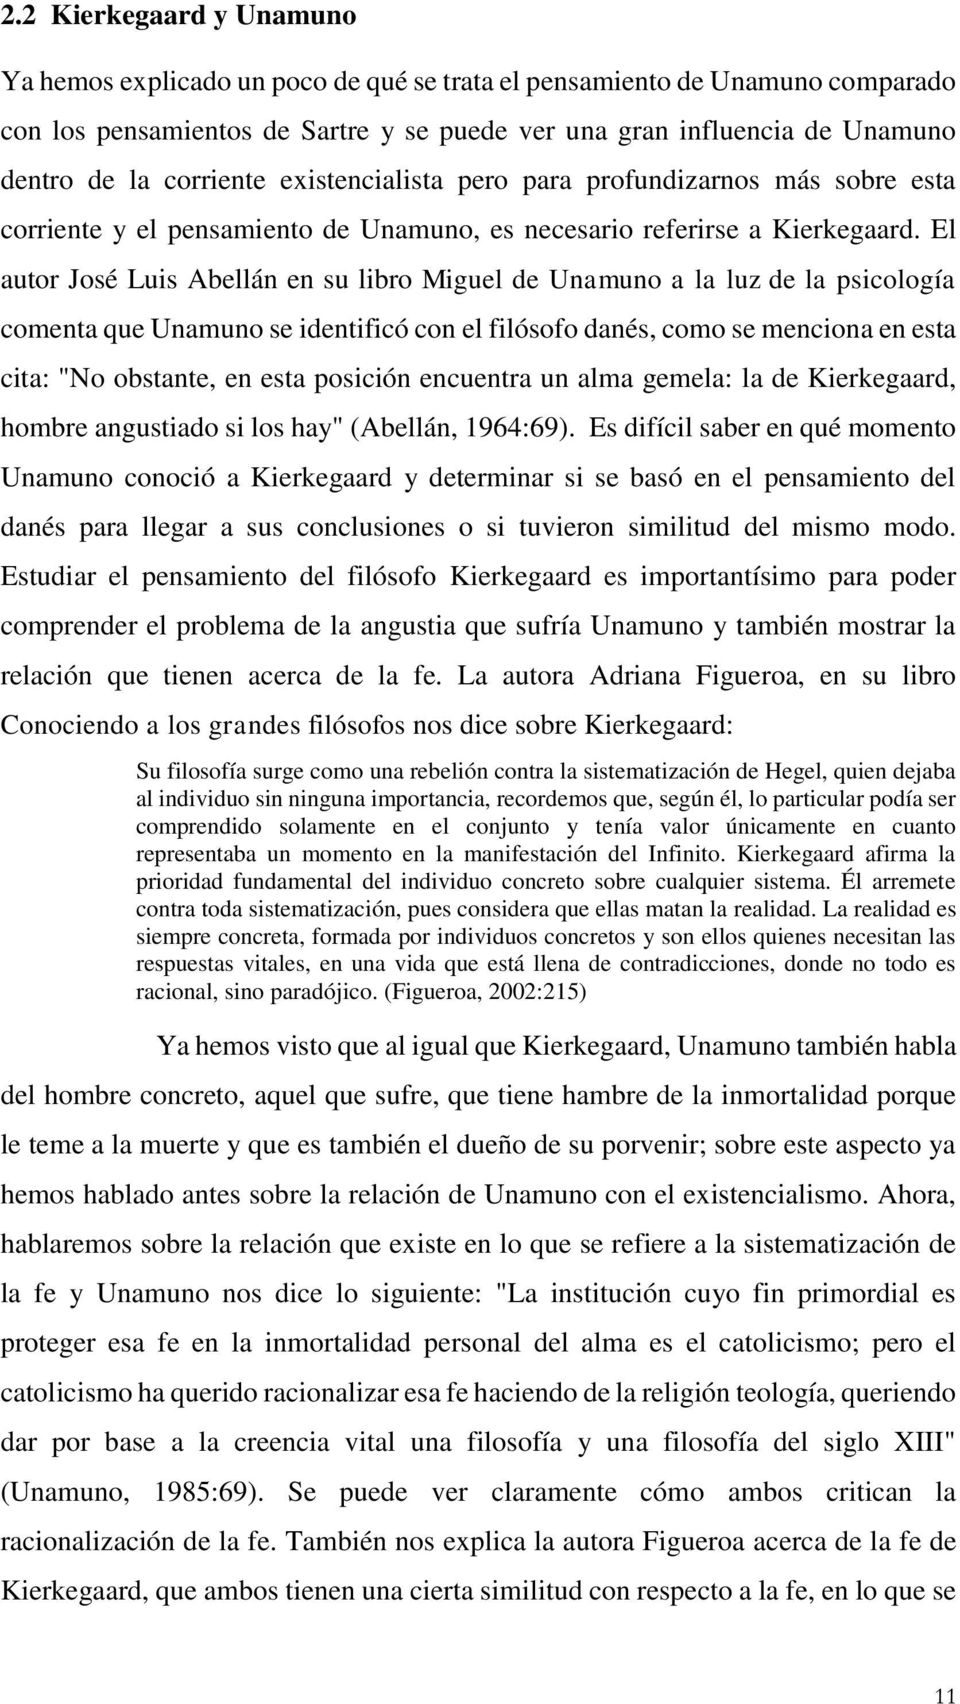 El autor José Luis Abellán en su libro Miguel de Unamuno a la luz de la psicología comenta que Unamuno se identificó con el filósofo danés, como se menciona en esta cita: "No obstante, en esta